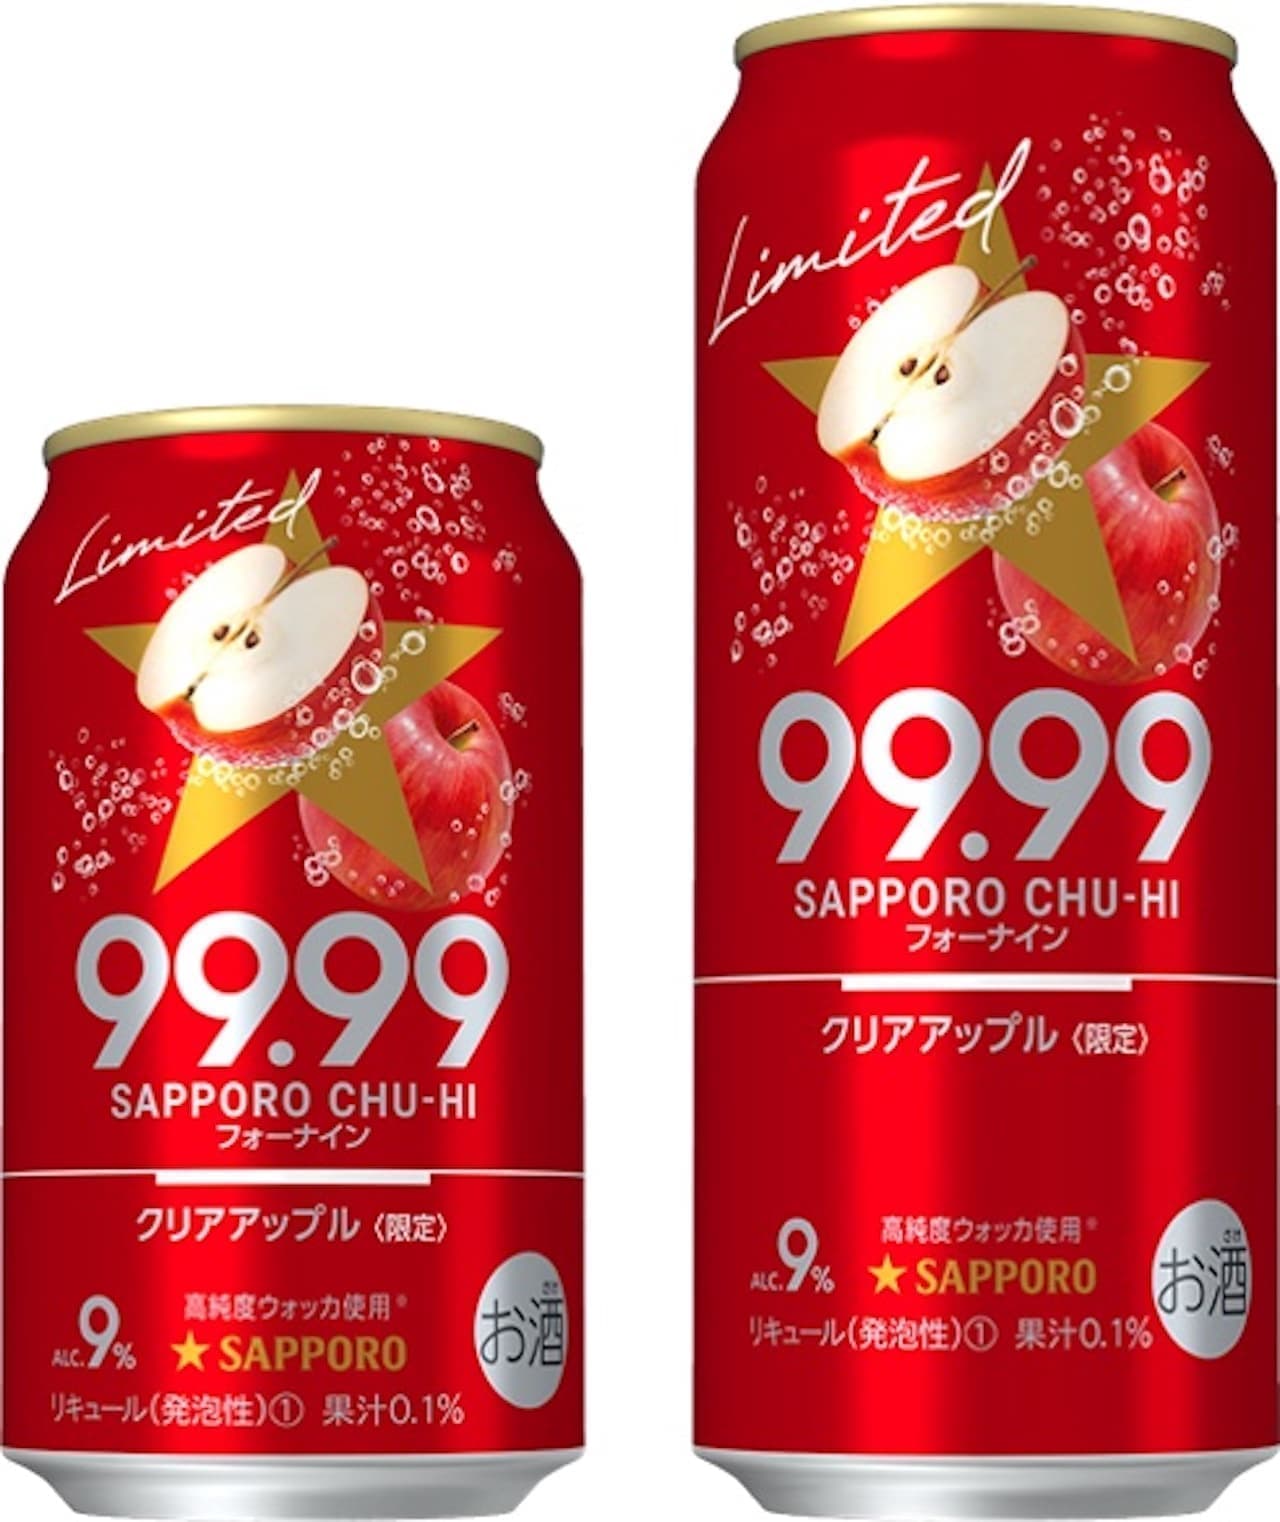 Sapporo Beer "Sapporo Chuhai 99.99 Clear Apple"